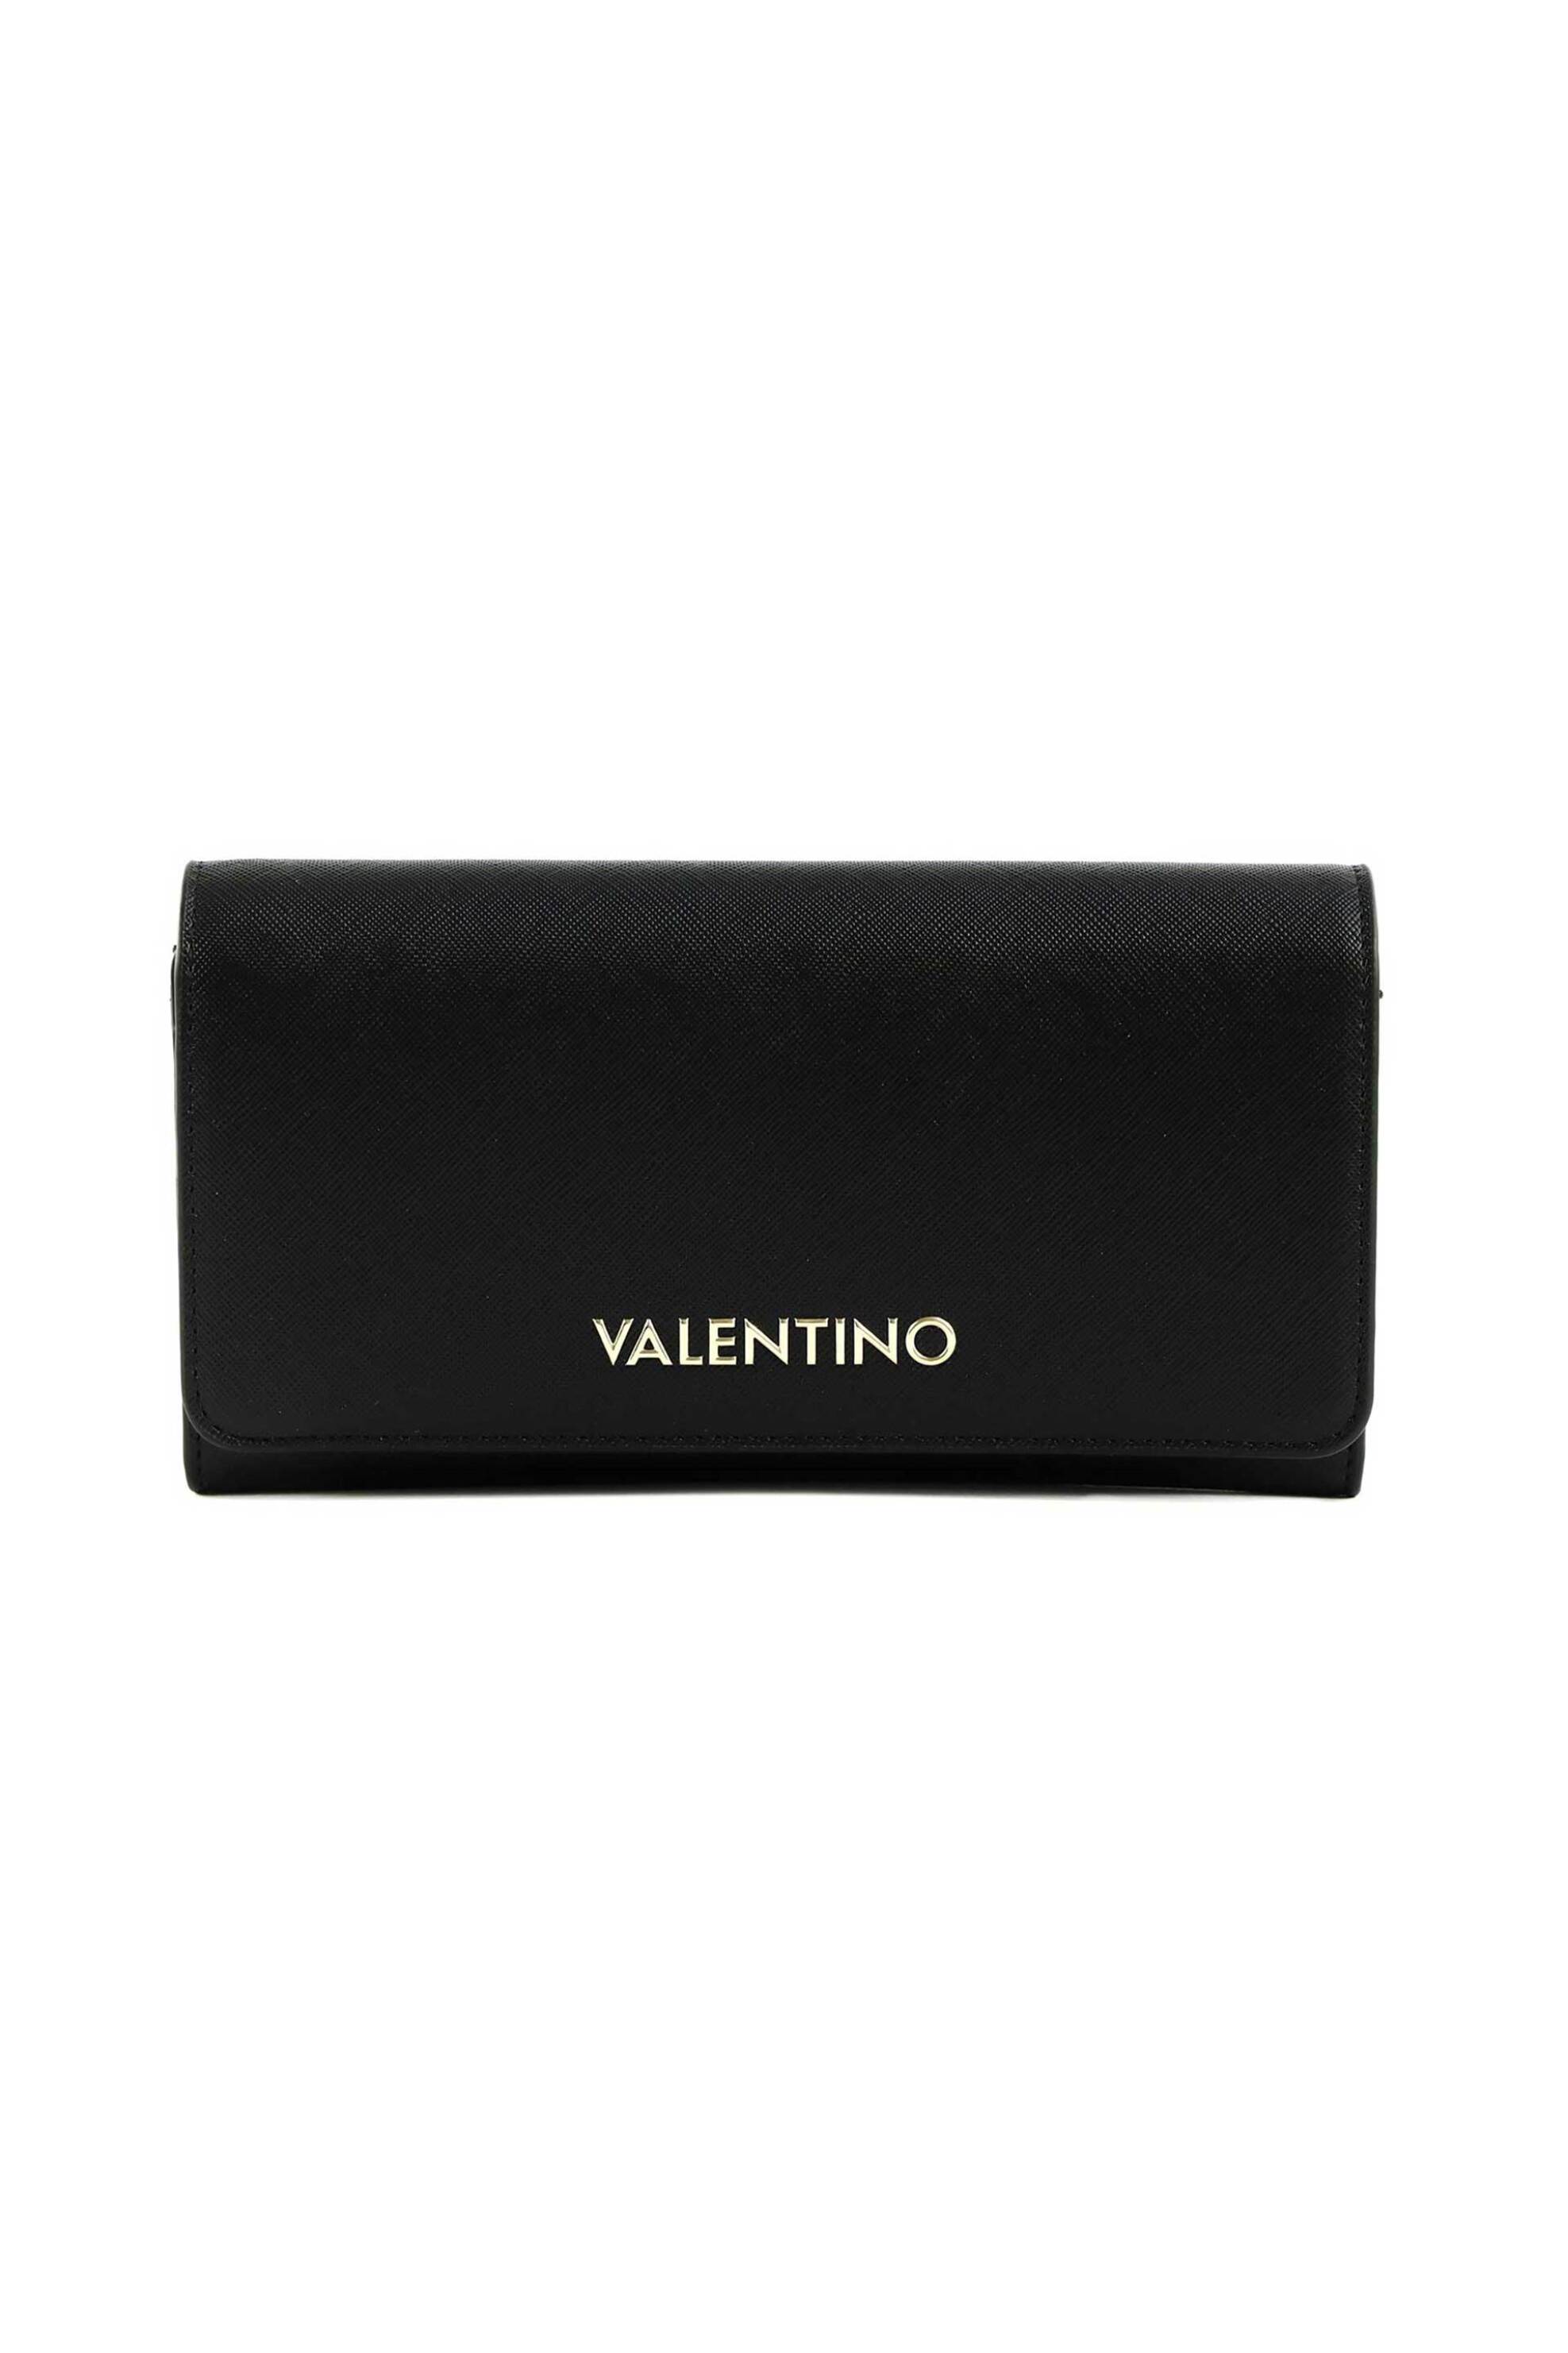 Γυναίκα > ΑΞΕΣΟΥΑΡ > Πορτοφόλια & Θήκες Valentino γυναικείο πορτοφόλι μονόχρωμο με ανάγλυφο logo "Zero Re" - 55KVPS7B3113/ZE Μαύρο